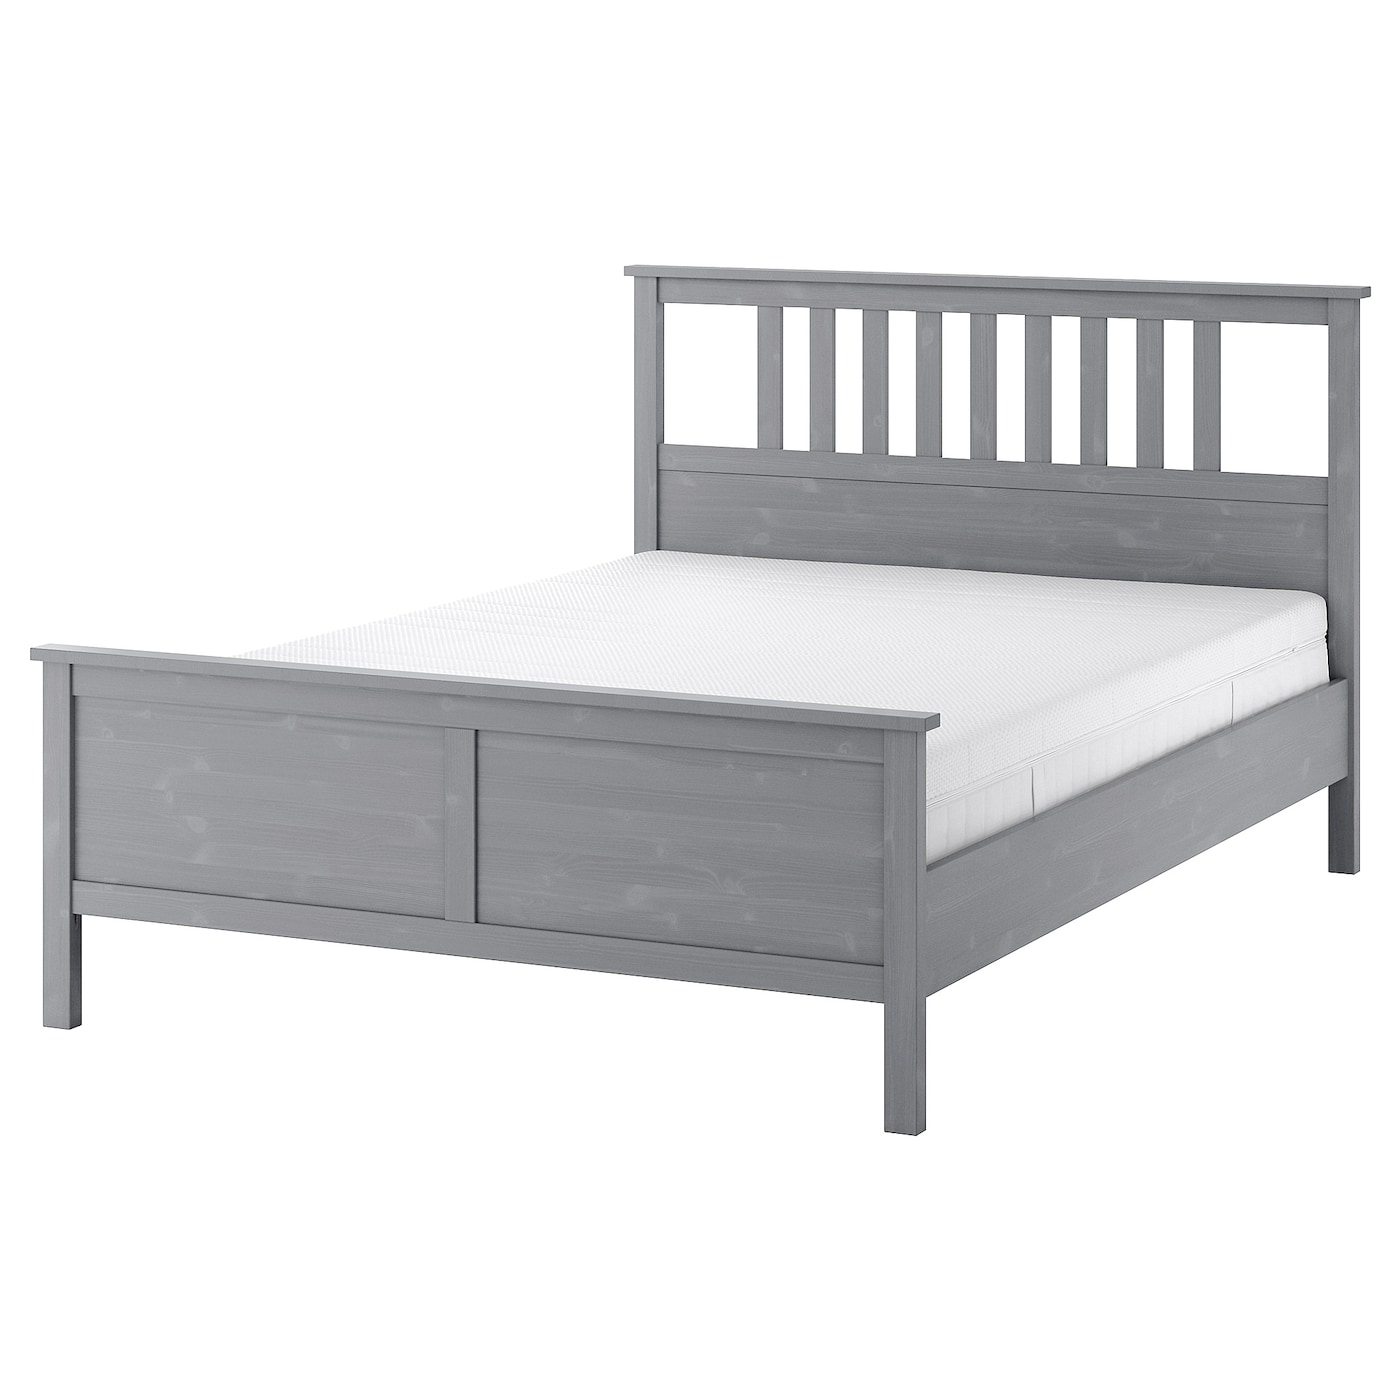 Кровать - IKEA HEMNES, 200х140 см, жесткий матрас, серый, ХЕМНЕС ИКЕА